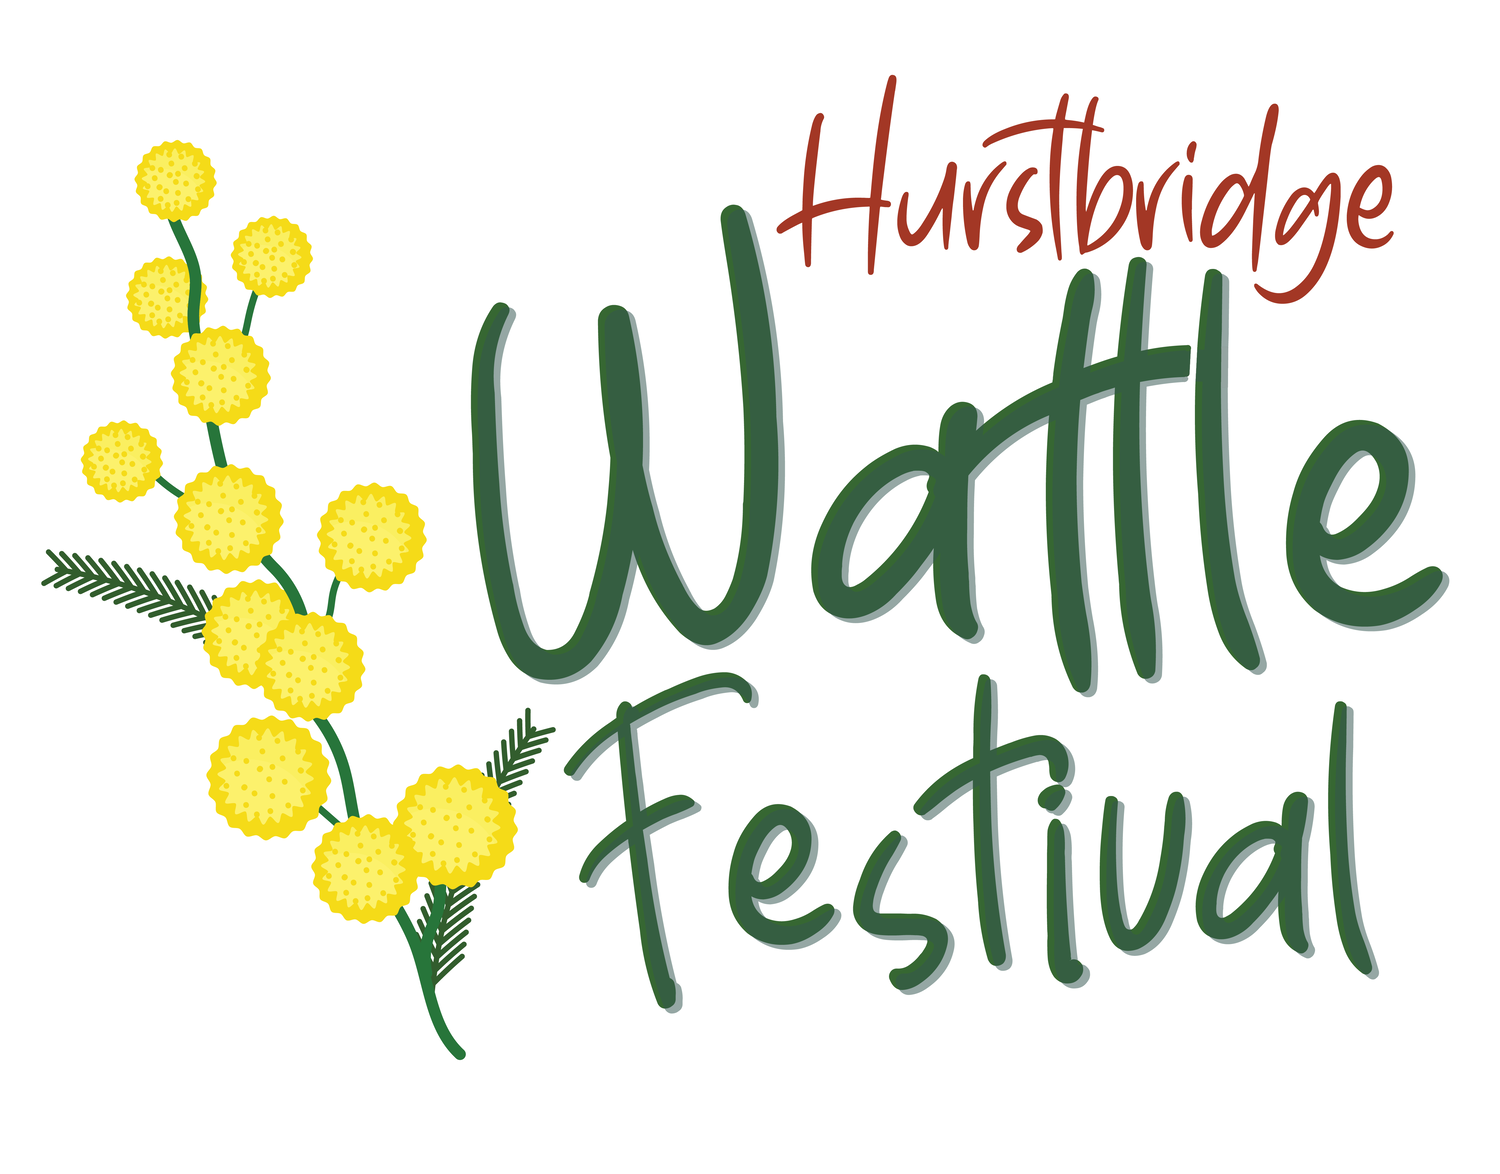 Hurstbridge Wattle Festival